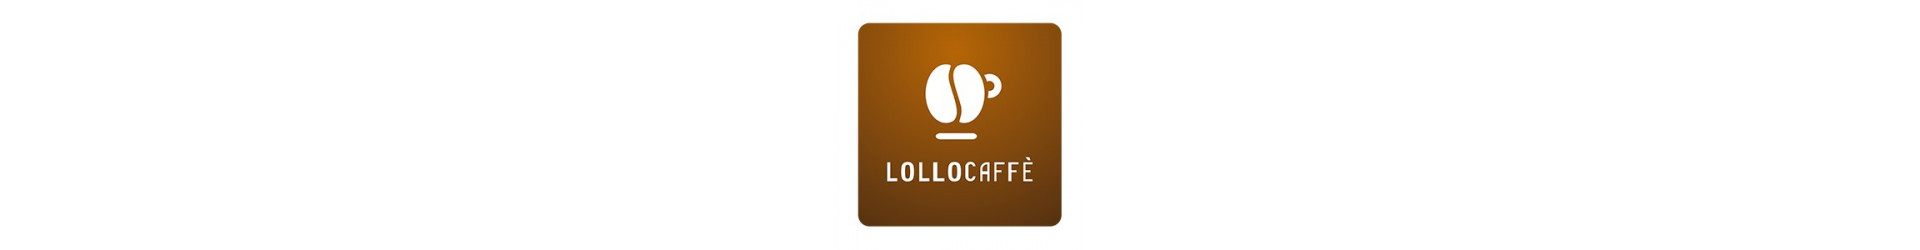 Food Machine offre in vendita caffè in capsule Lollo. Scopri il miglior rapporto qualità prezzo con i servizi e prodotti offerti da Food Machine. Visita il sito.